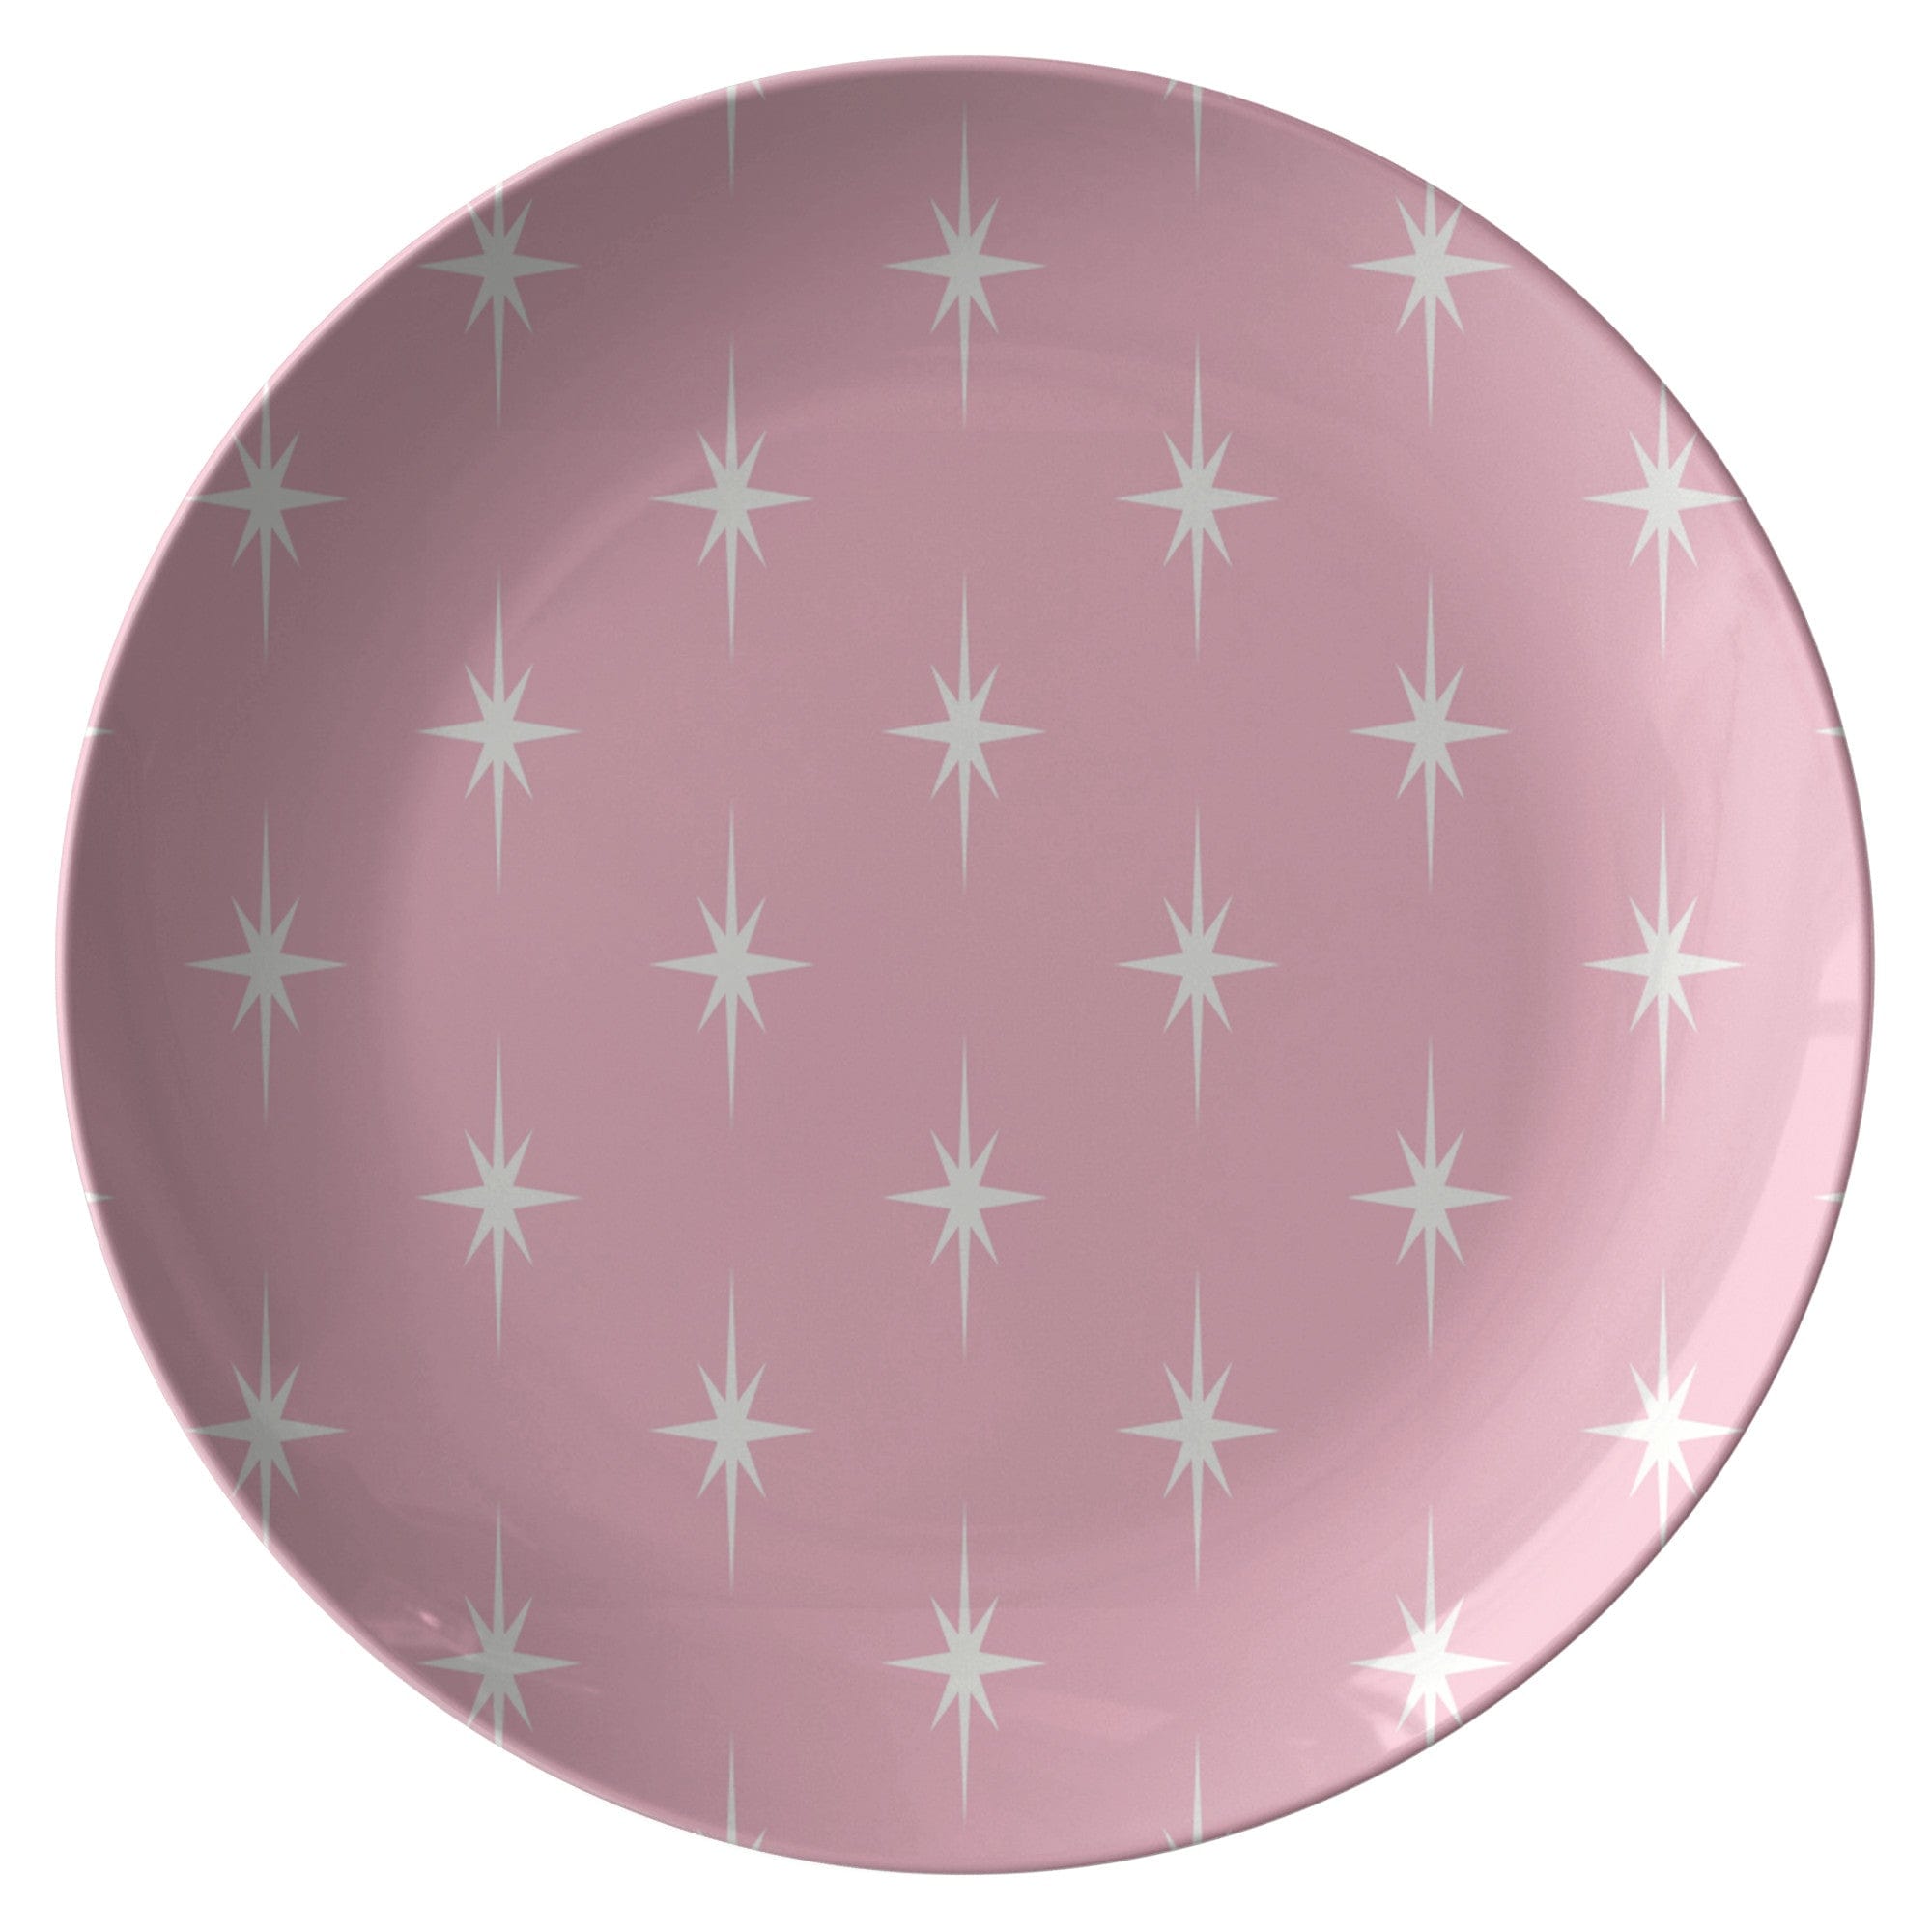 Kate McEnroe New York Retro 1950s Atomic Starburst Pink Mid Century Modern Dinner Plate Plates